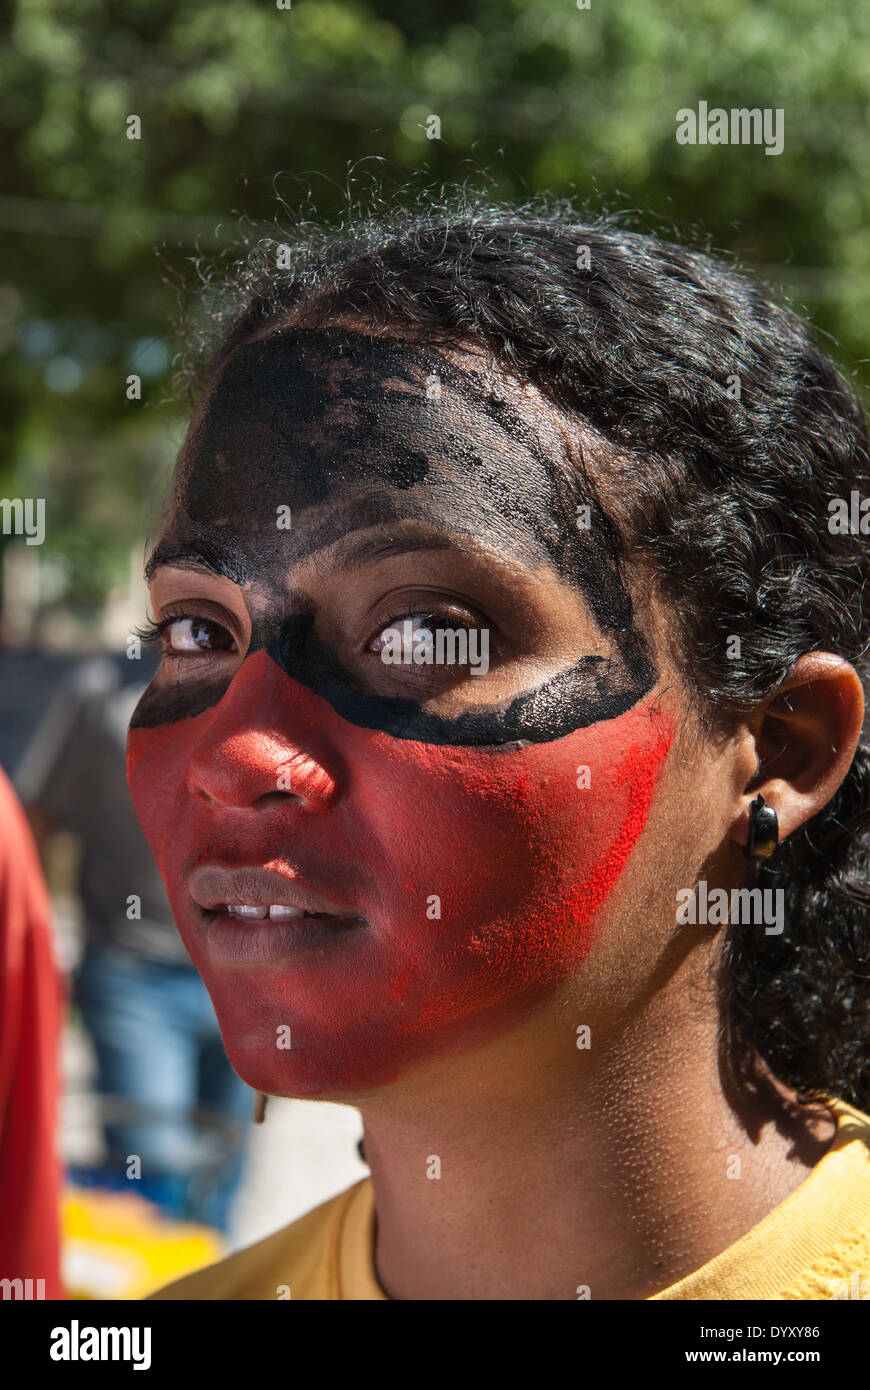 Belem, Para Stato, Brasile. Manifestazione contro la costruzione di dighe idroelettriche. Foto Stock